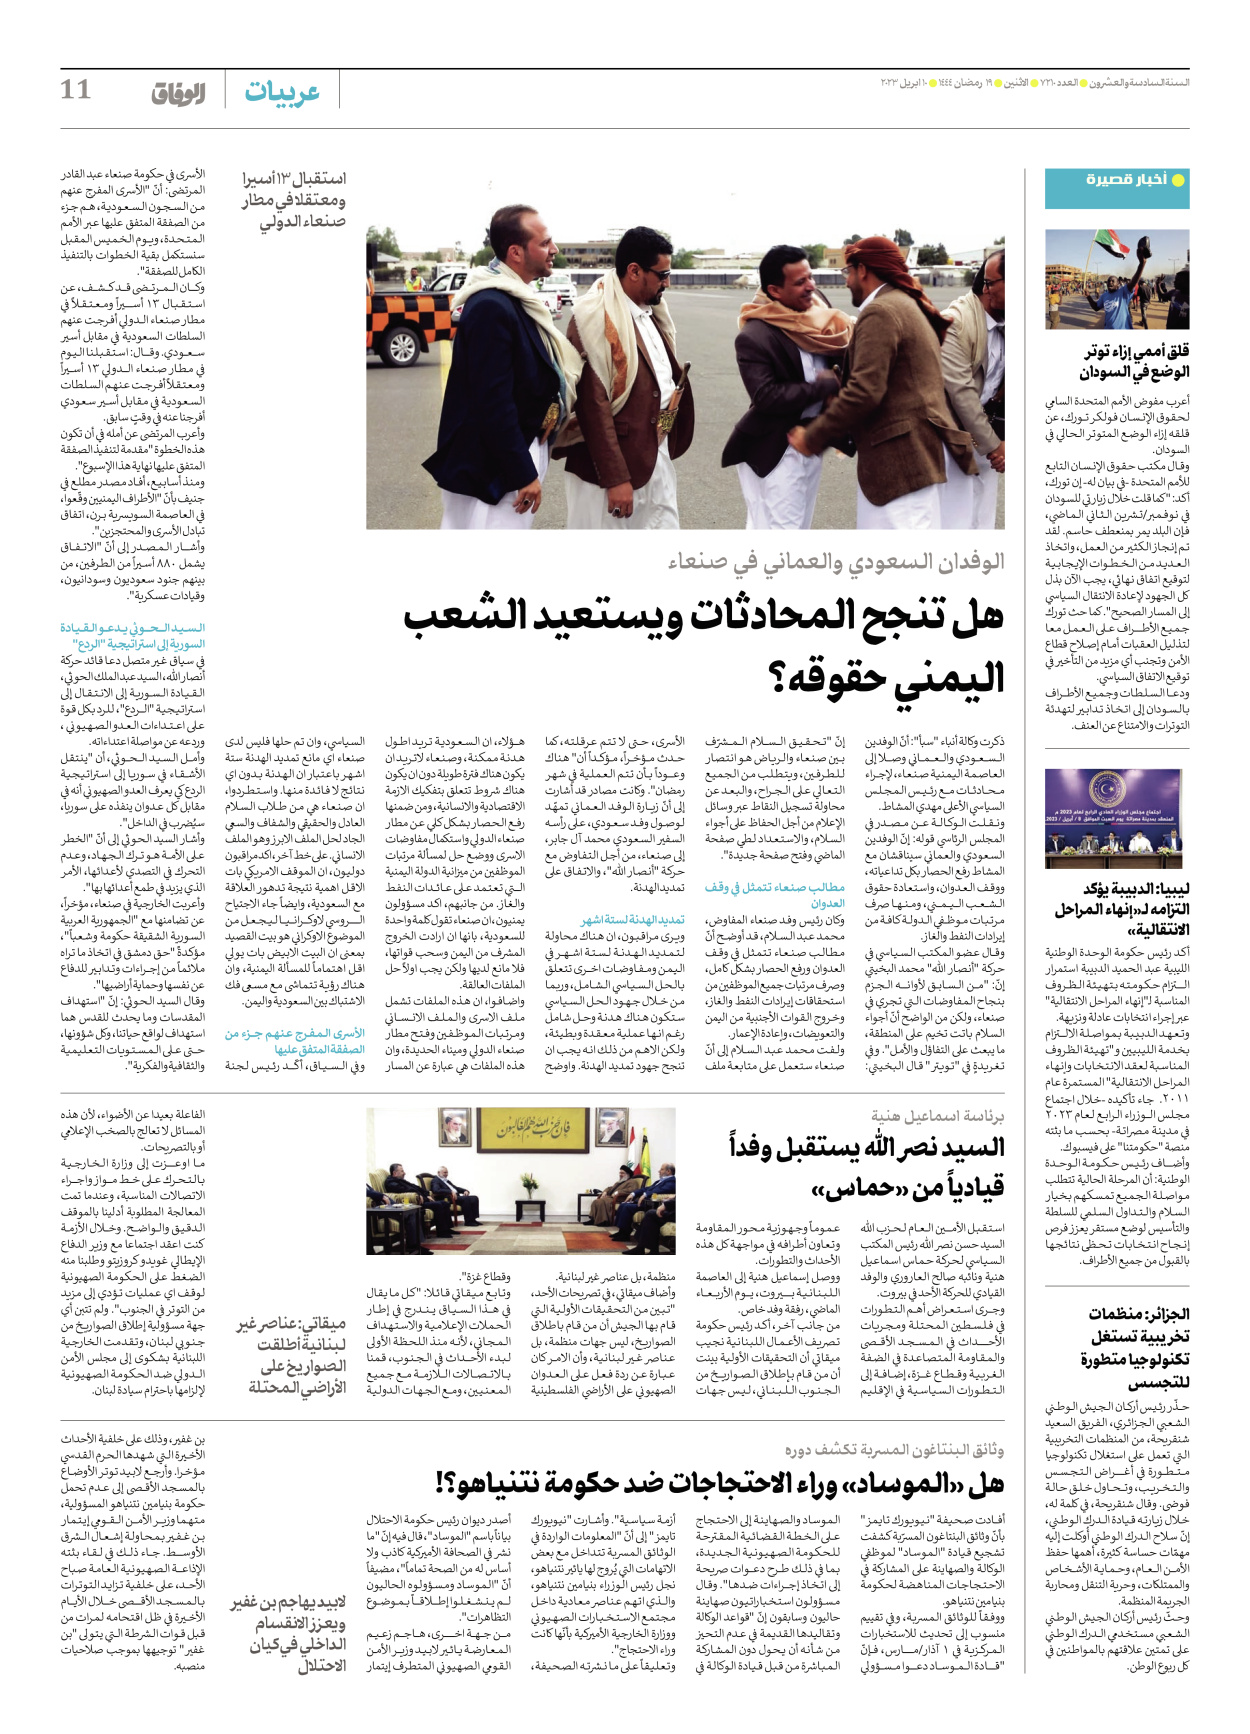 صحیفة ایران الدولیة الوفاق - العدد سبعة آلاف ومائتان وعشرة - ١٠ أبريل ٢٠٢٣ - الصفحة ۱۱